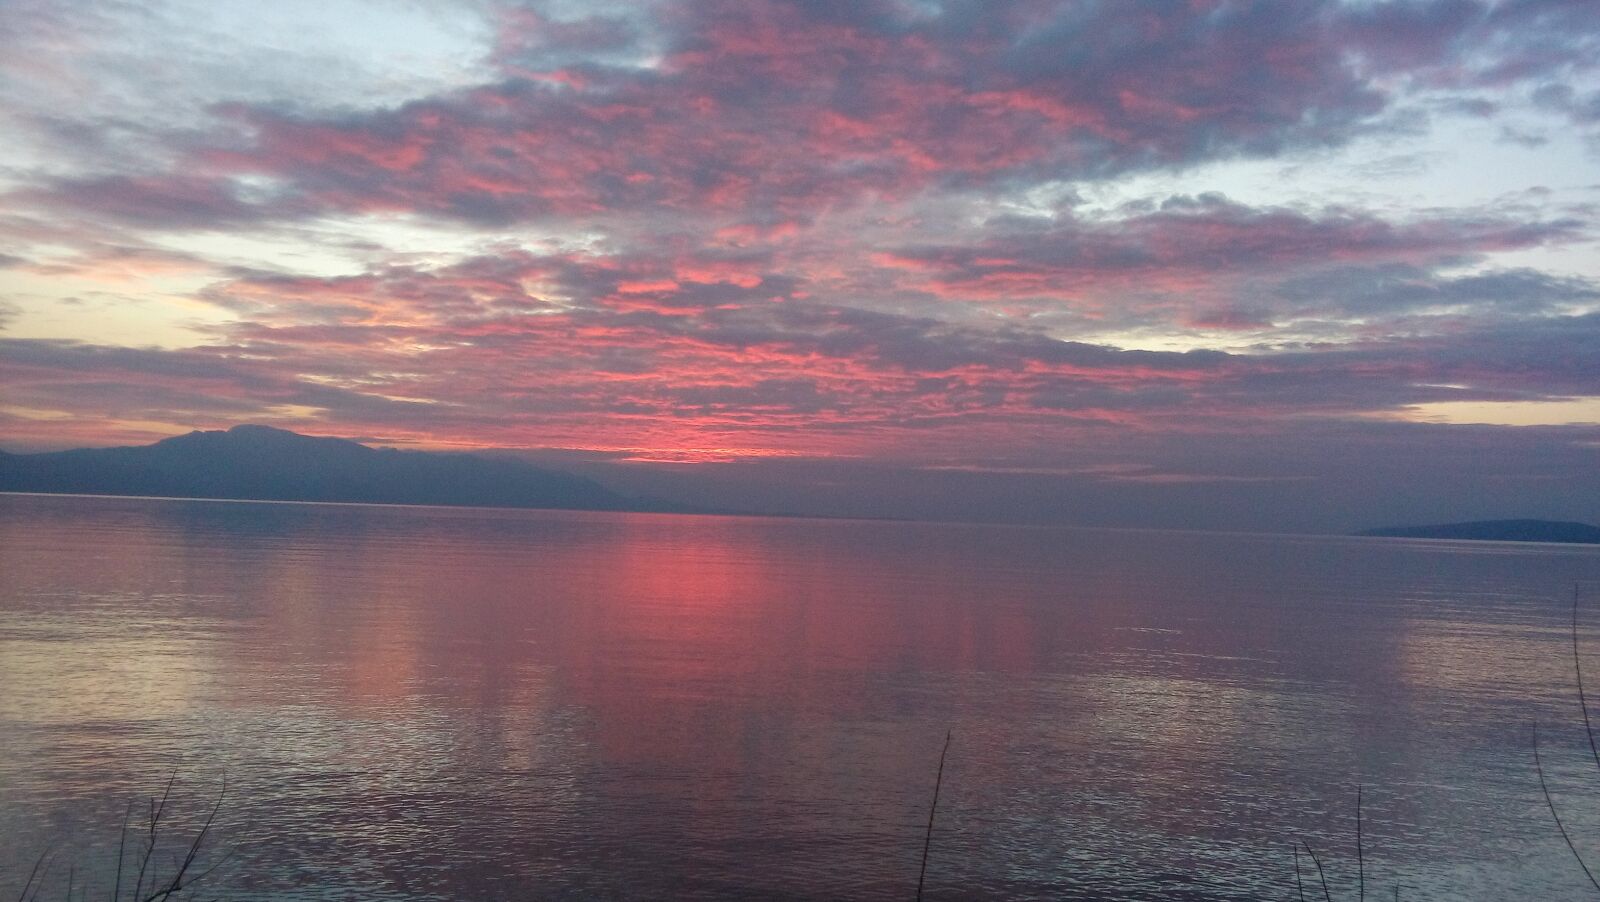 LG LBello sample photo. Sunset, sea, croatia photography